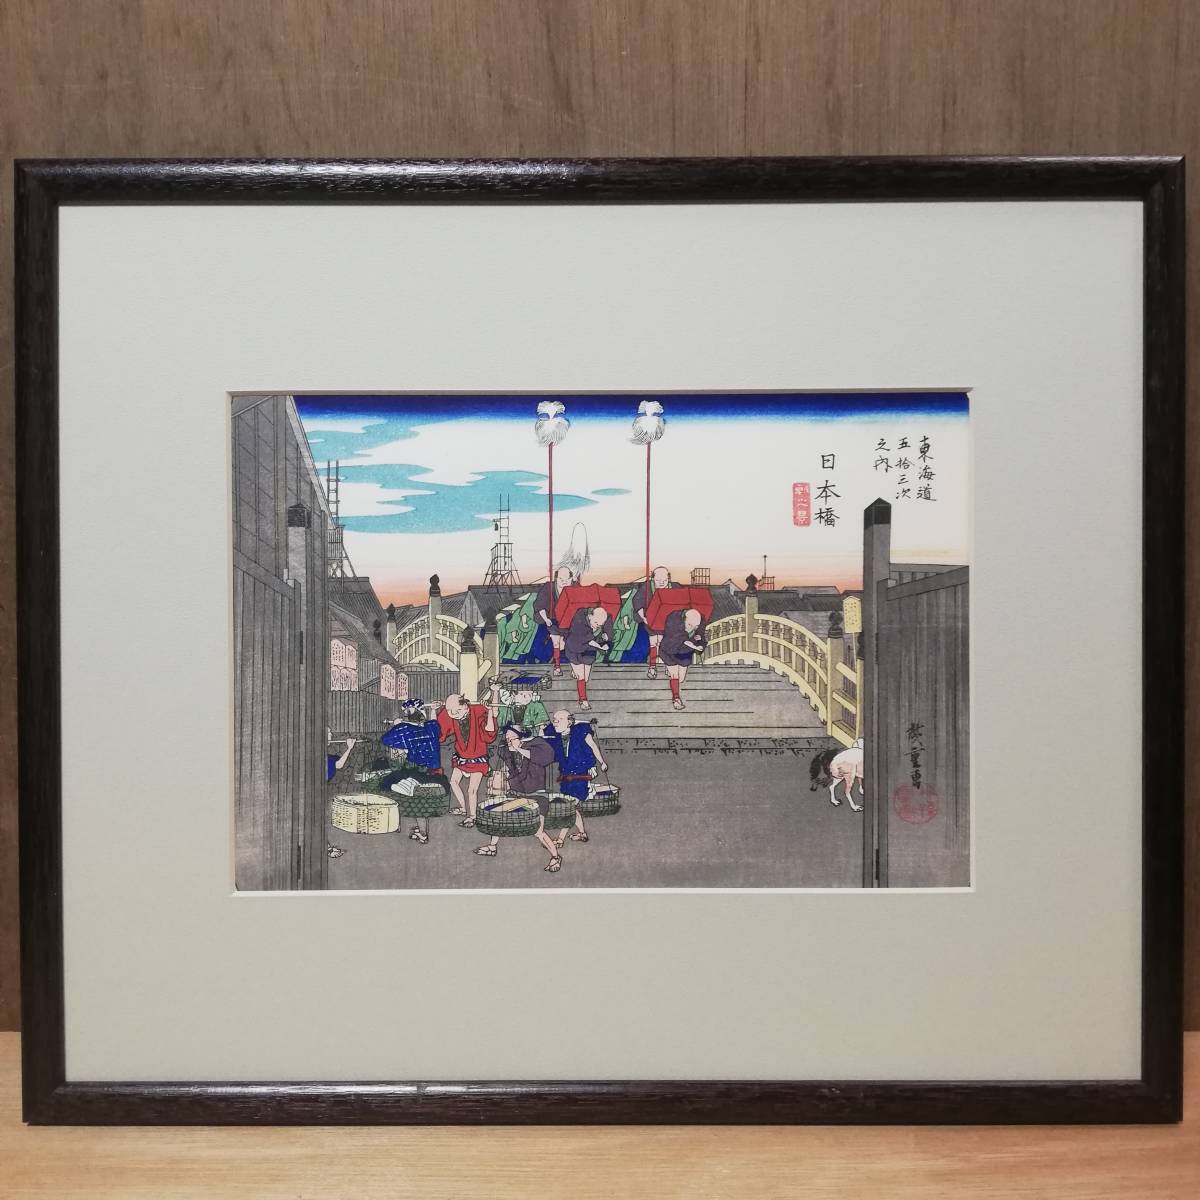 Hiroshige Utagawa / Cincuenta y tres estaciones del Tokaido Nihonbashi Grabado en madera Tallado por Torazo Matsuda Impreso por Tadao Endo Caja auténtica incluida, cuadro, Ukiyo-e, imprimir, foto de lugar famoso